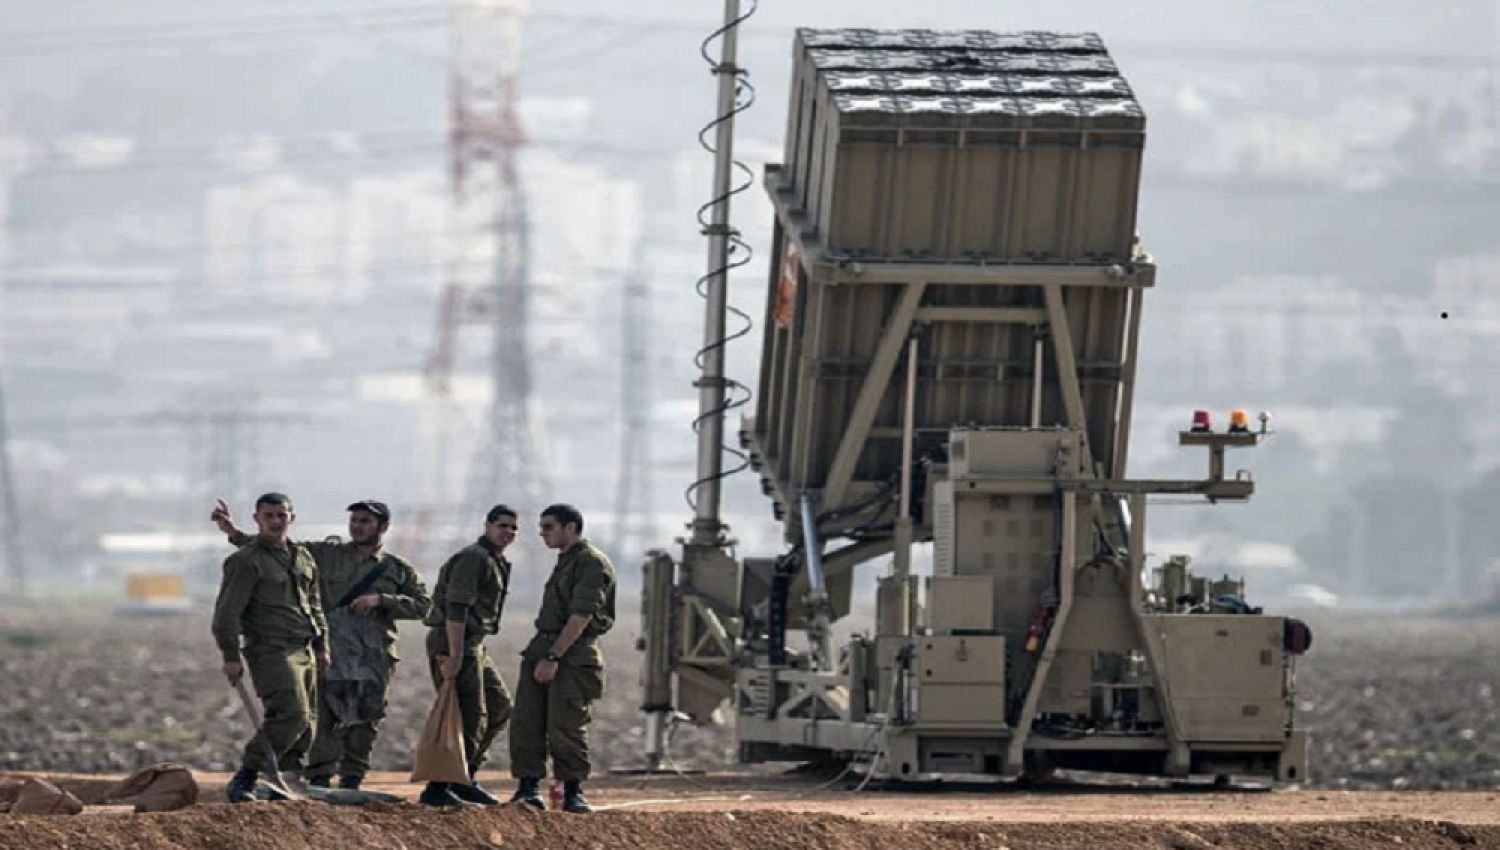 دعوات إسرائيلية لتحويل القبة الحديدية إلى محامِ دفاع دبلوماسي